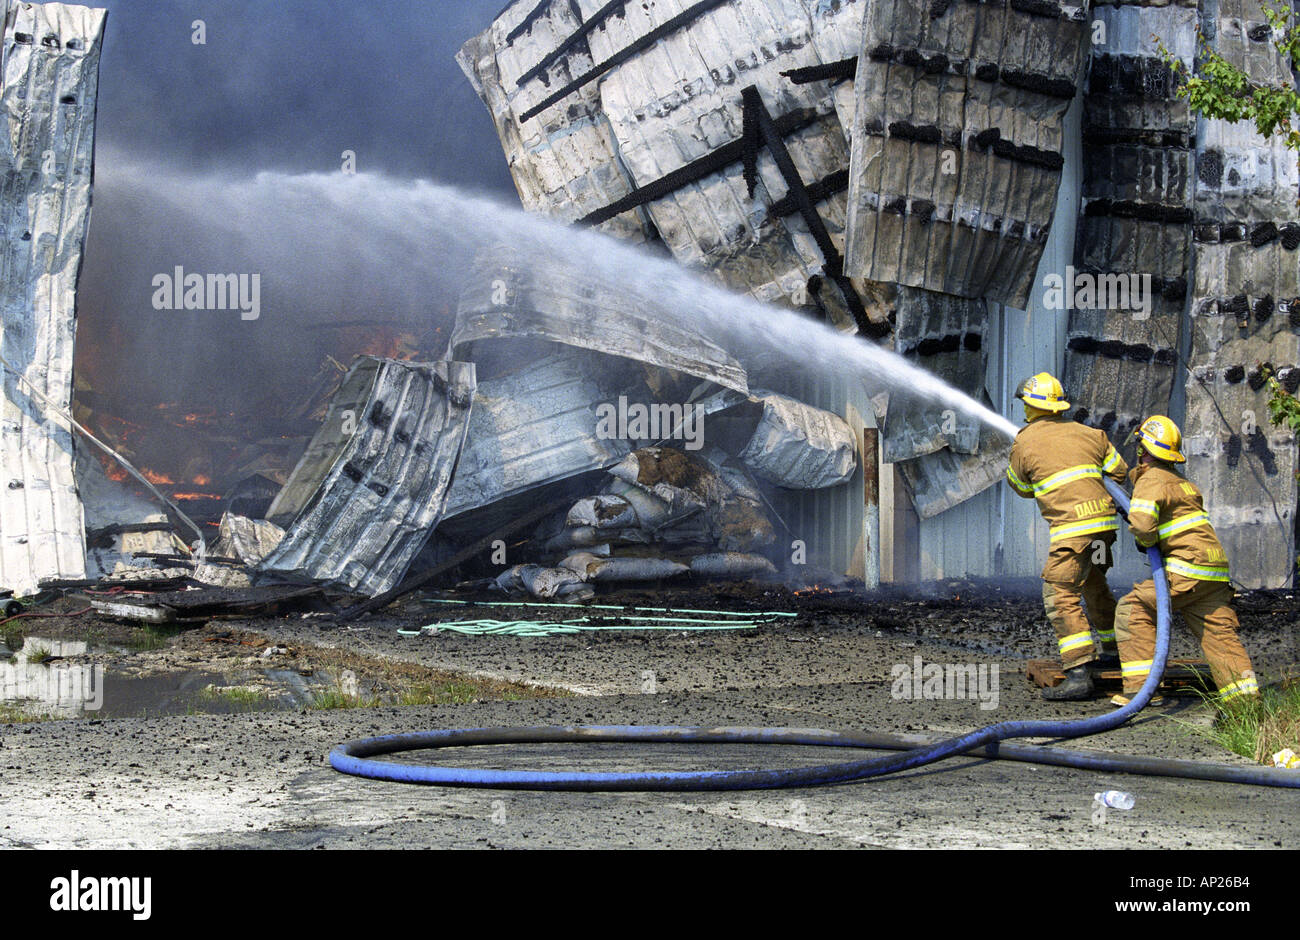 Deux pompiers tenir un flexible pulvériser de l'eau sur une tôle buring barn Banque D'Images